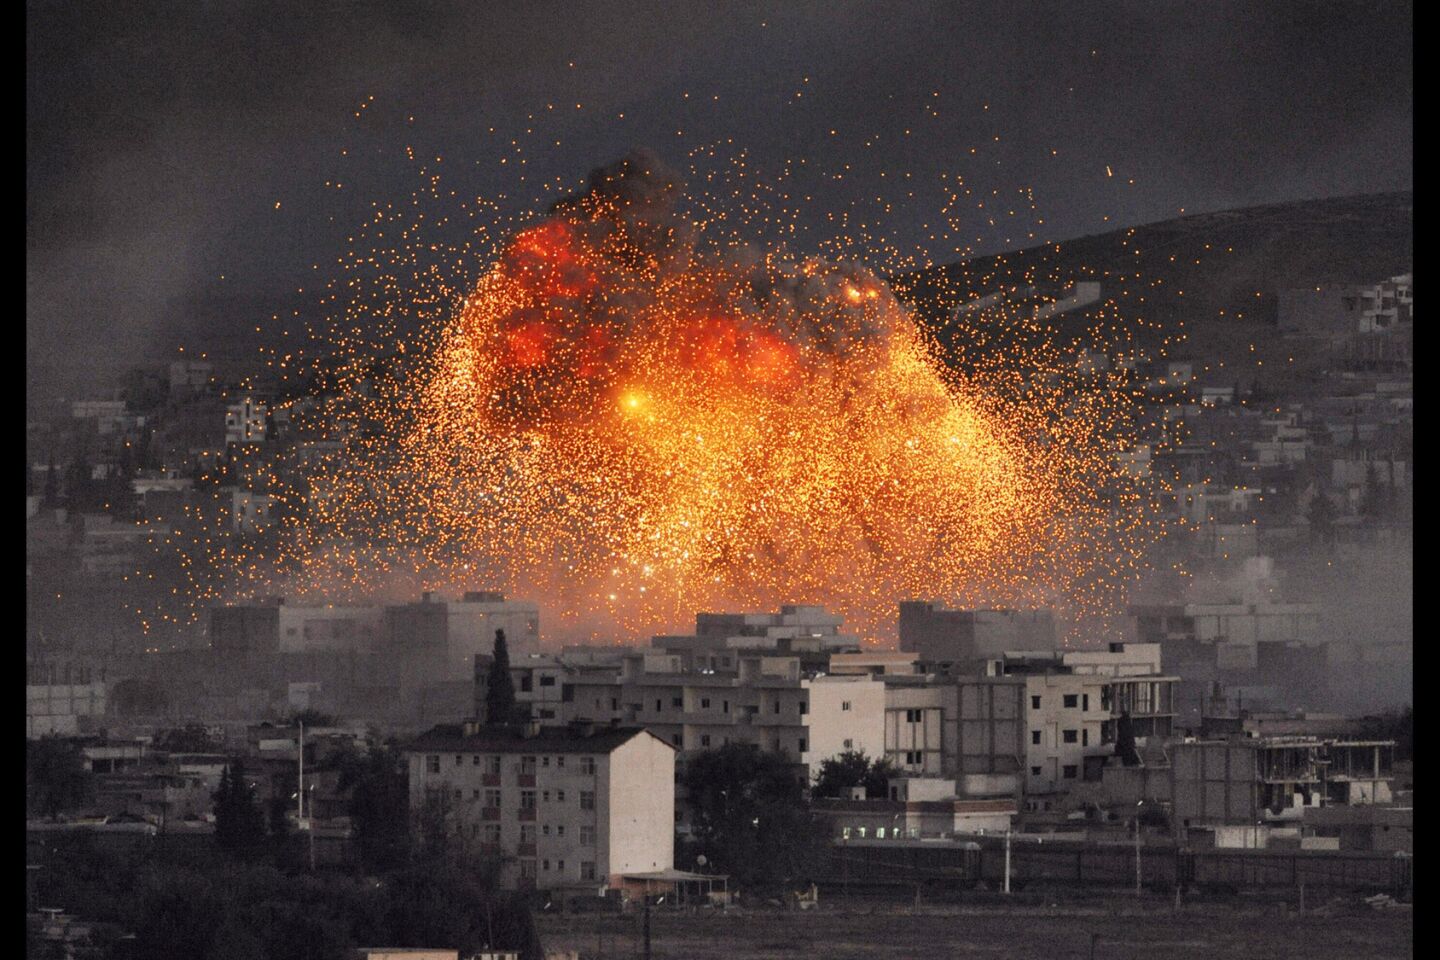 Kobani, Syria